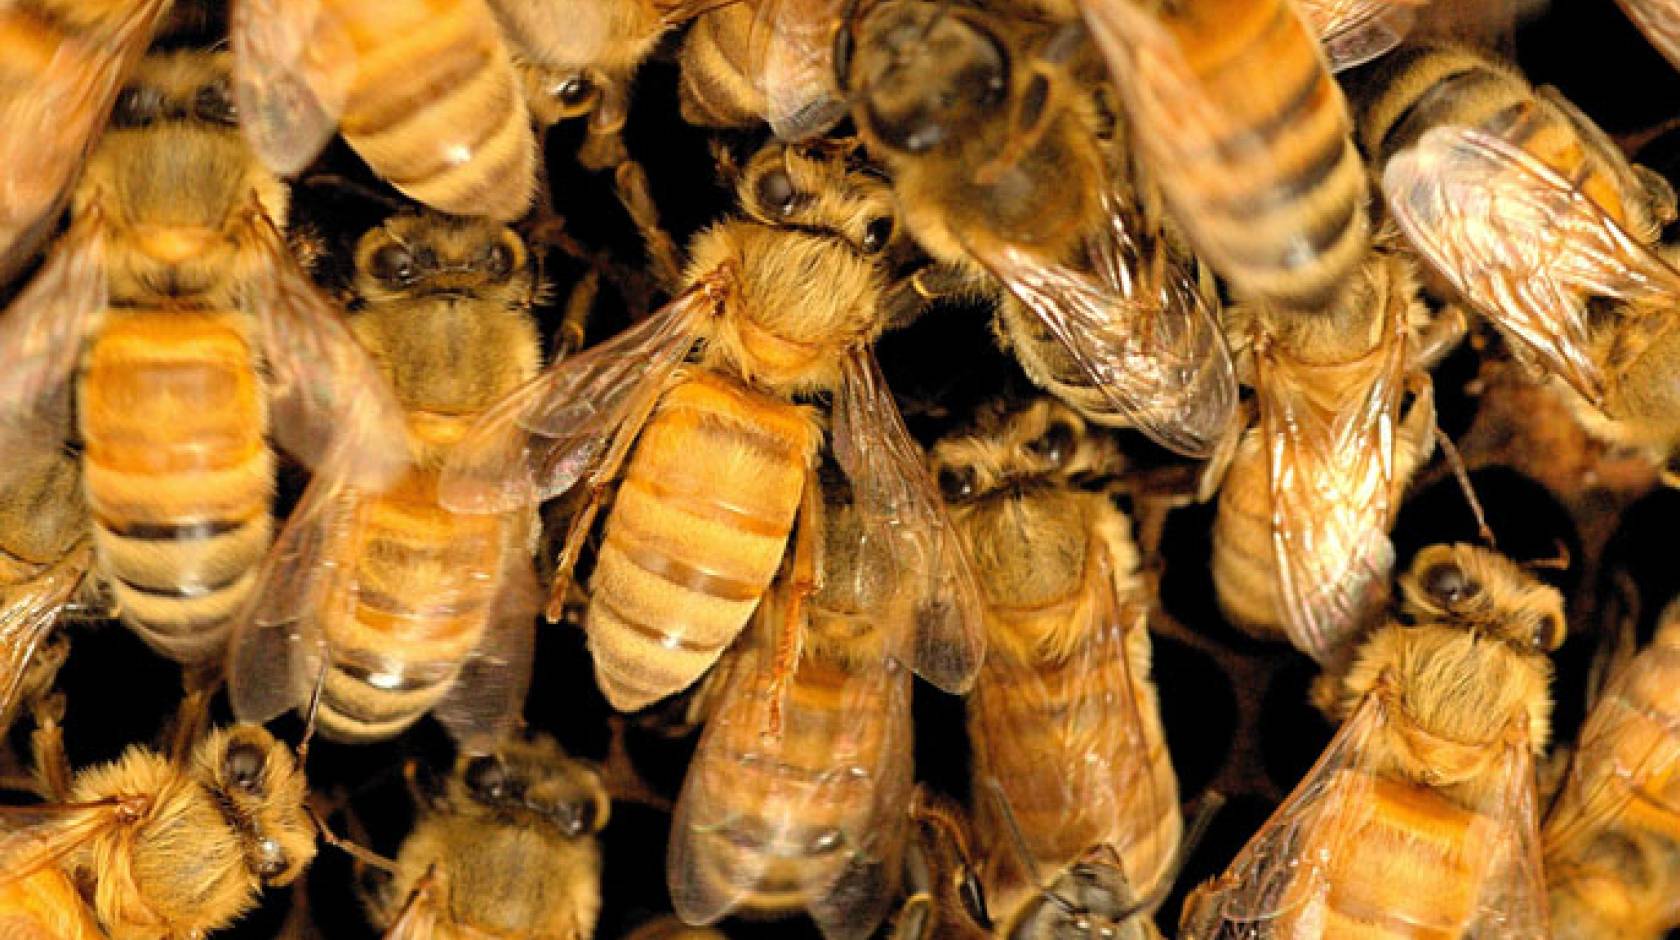 Pile of honeybees